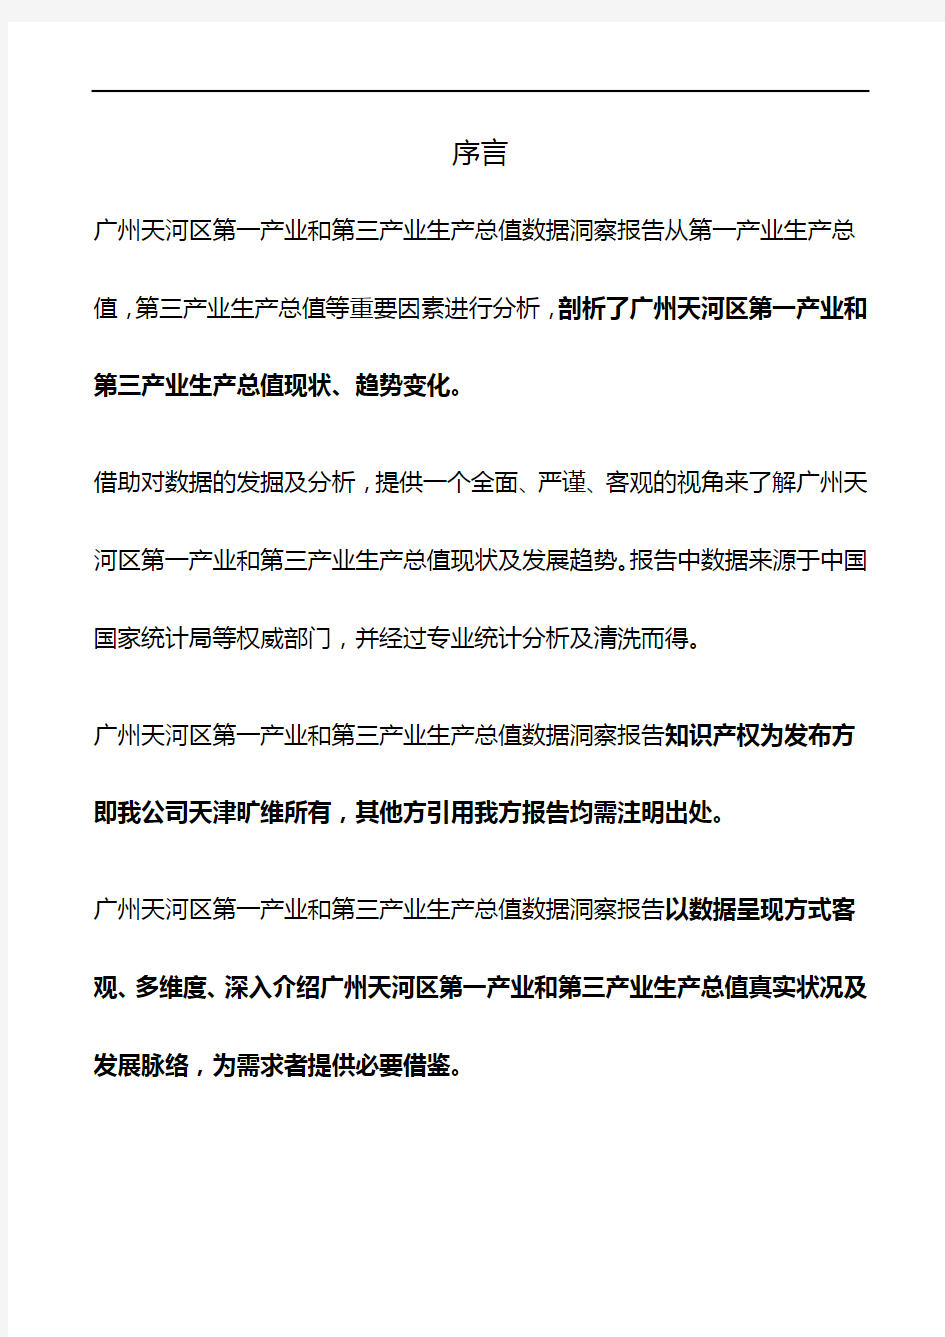 广东省广州天河区第一产业和第三产业生产总值3年数据洞察报告2020版